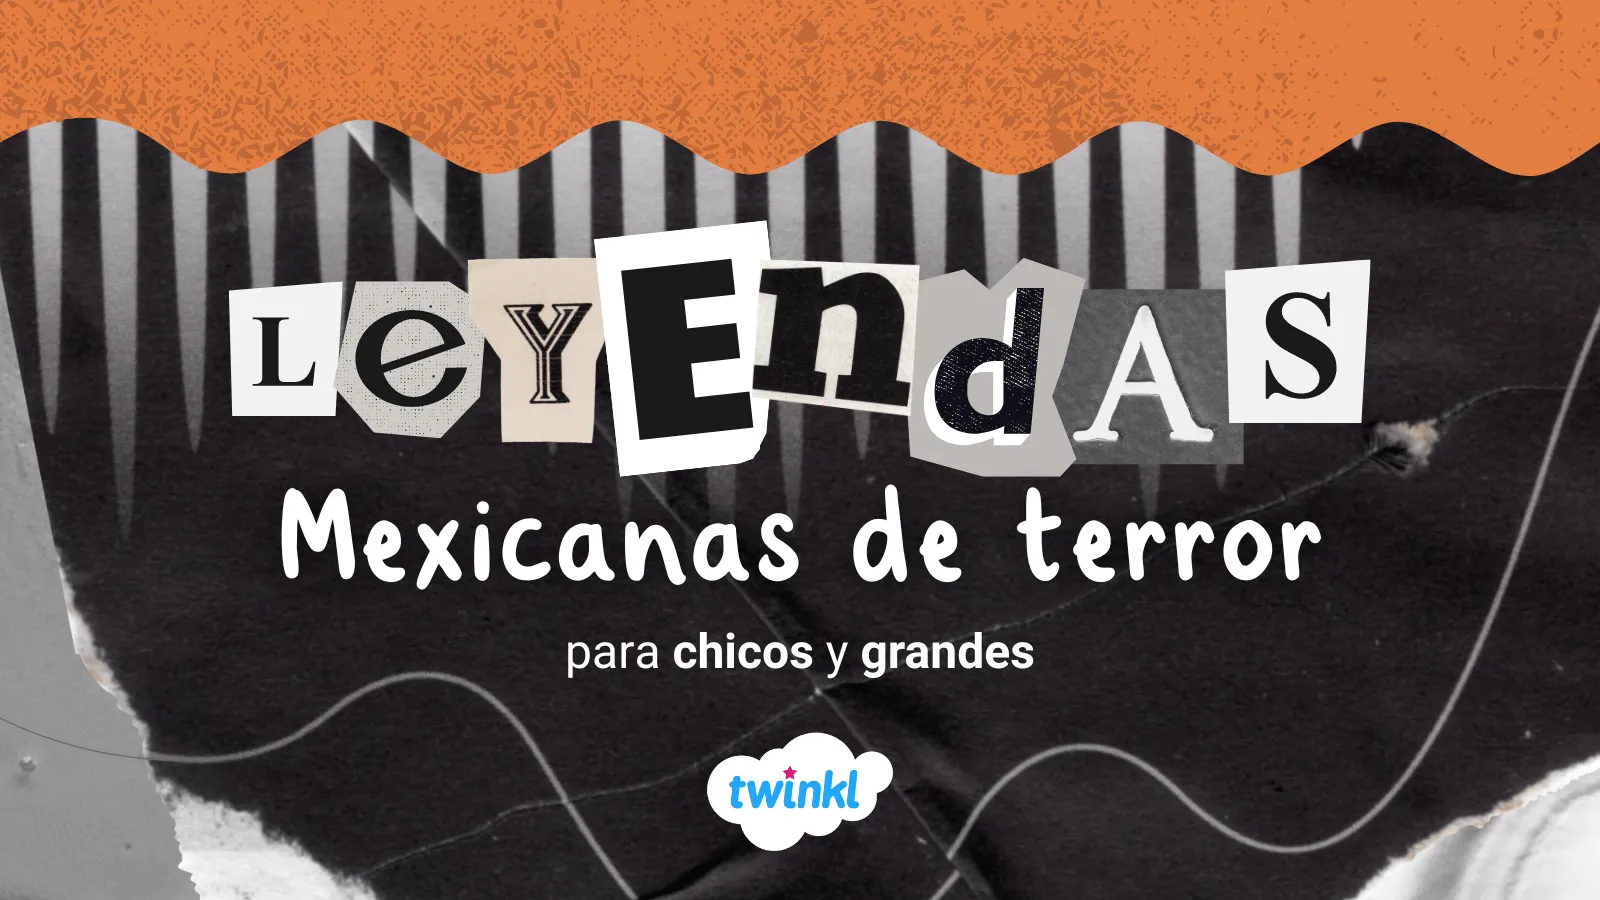 Leyendas mexicanas de terror para chicos y grandes - Twinkl